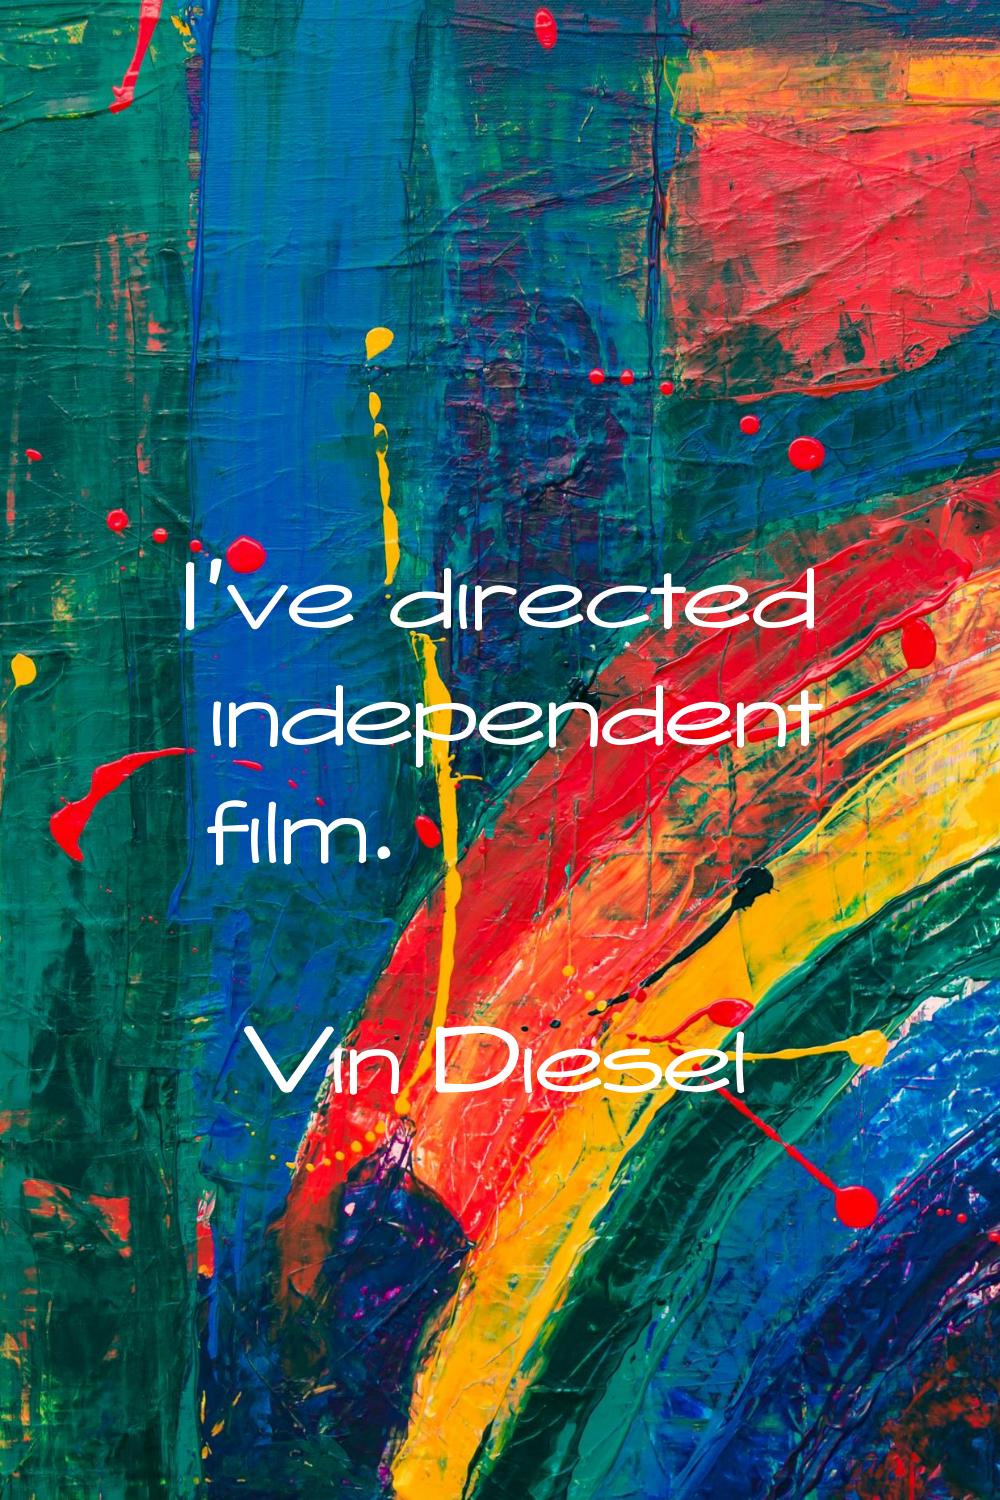 I've directed independent film.